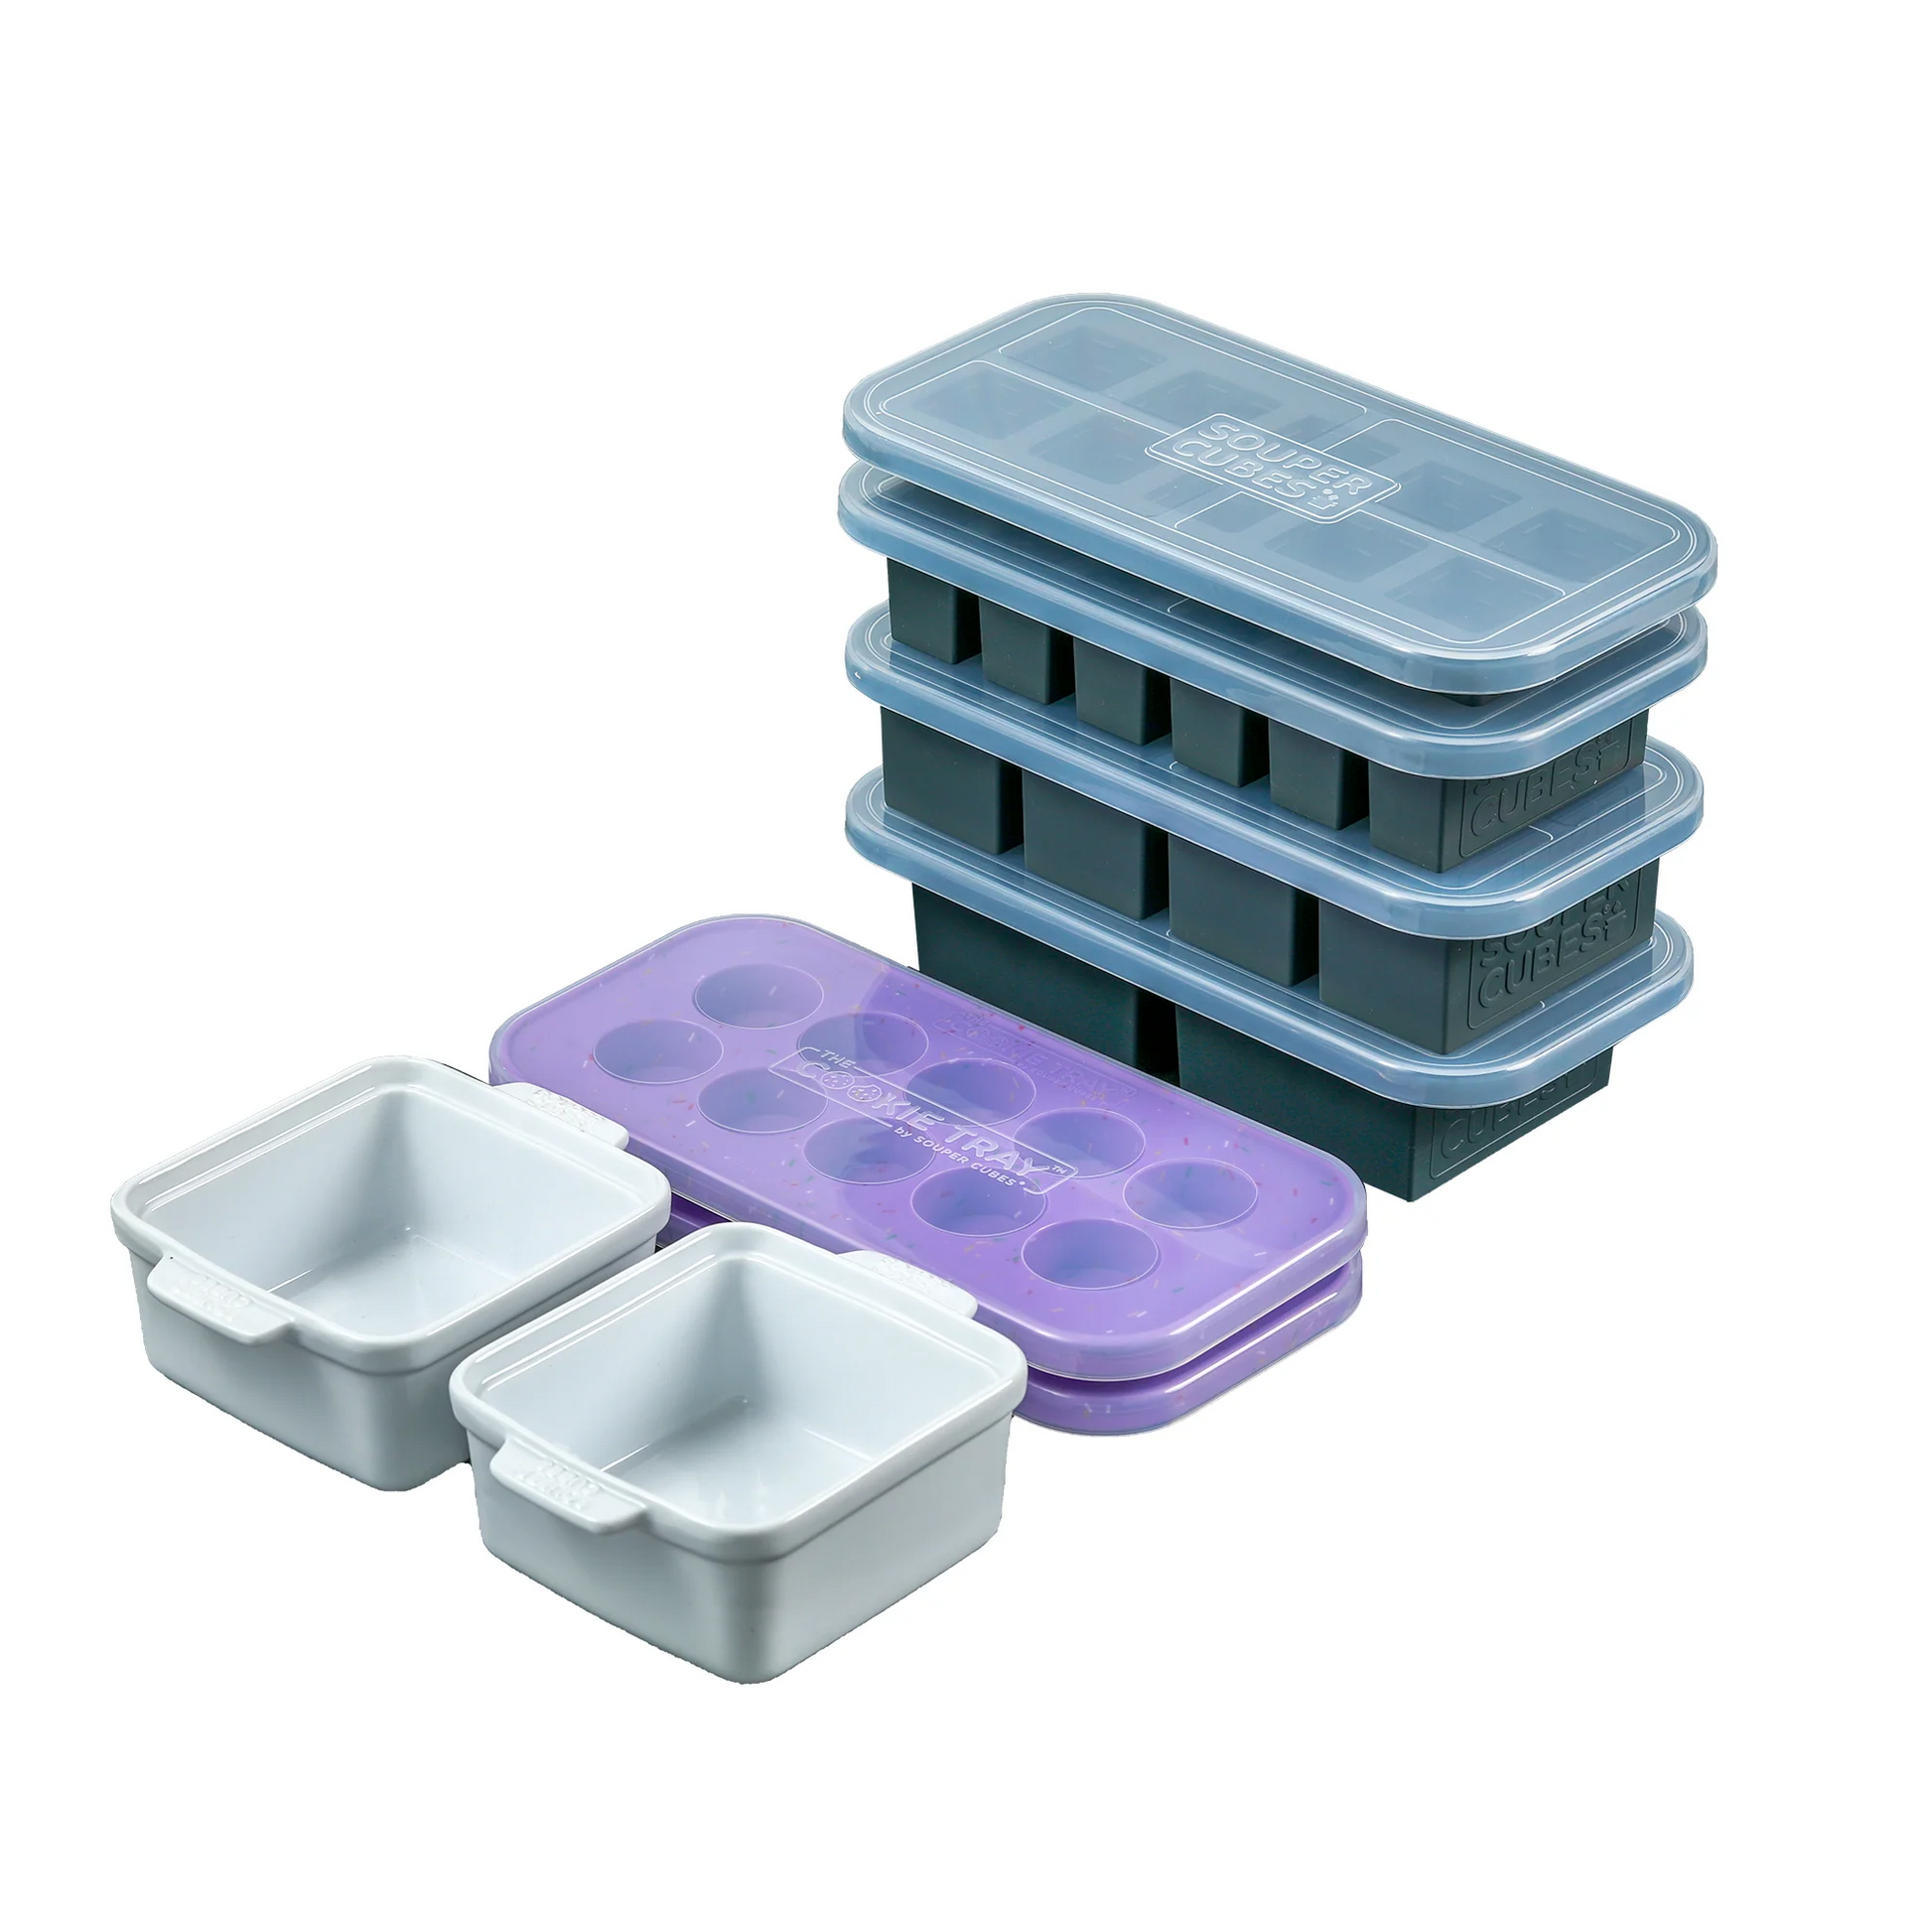 Souper Cubes Complete Set – Souper Cubes®